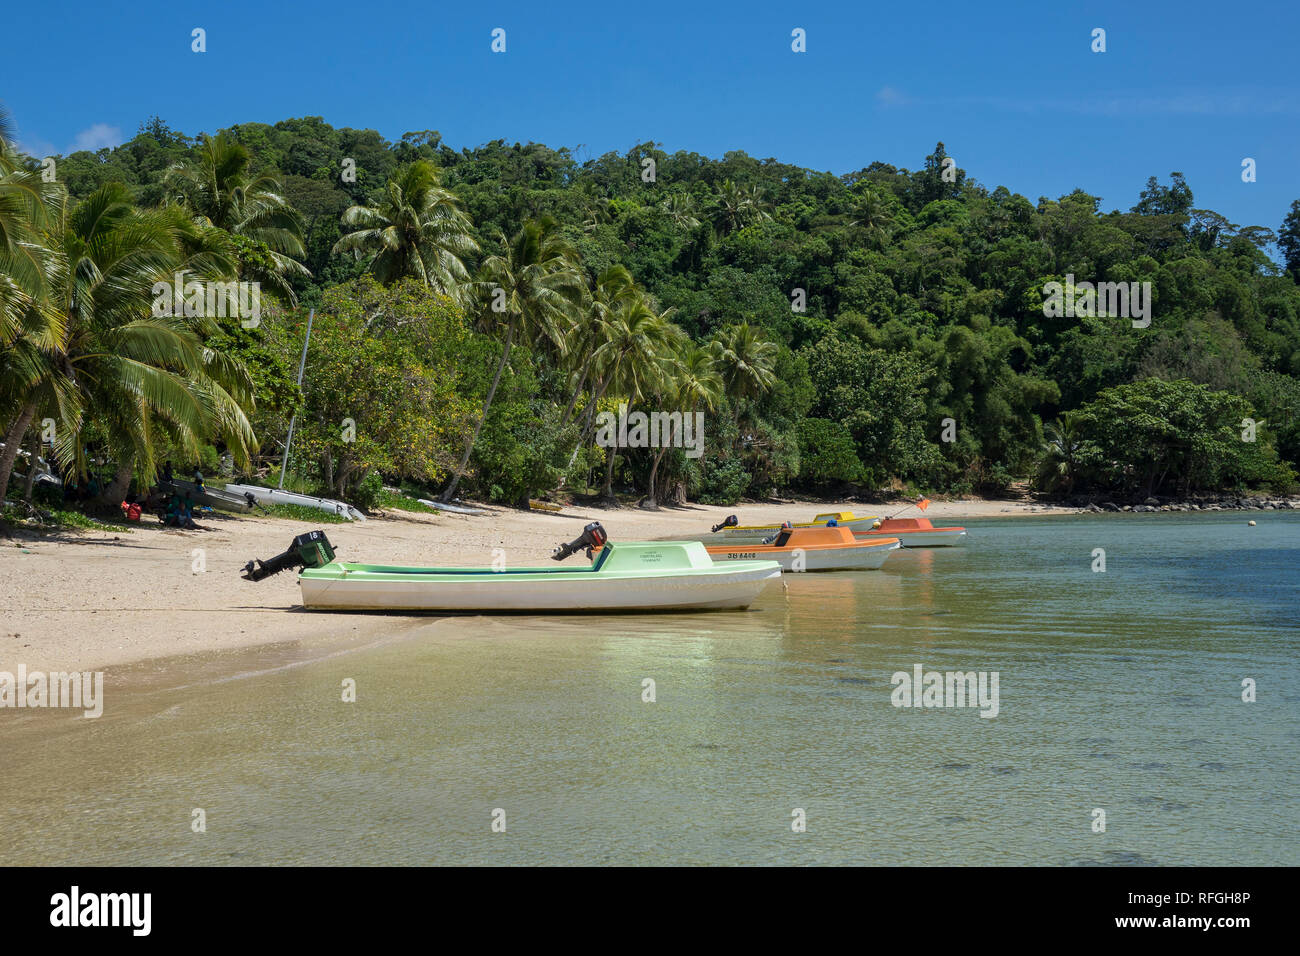 Vanuatu, Aneityum island, beach Stock Photo